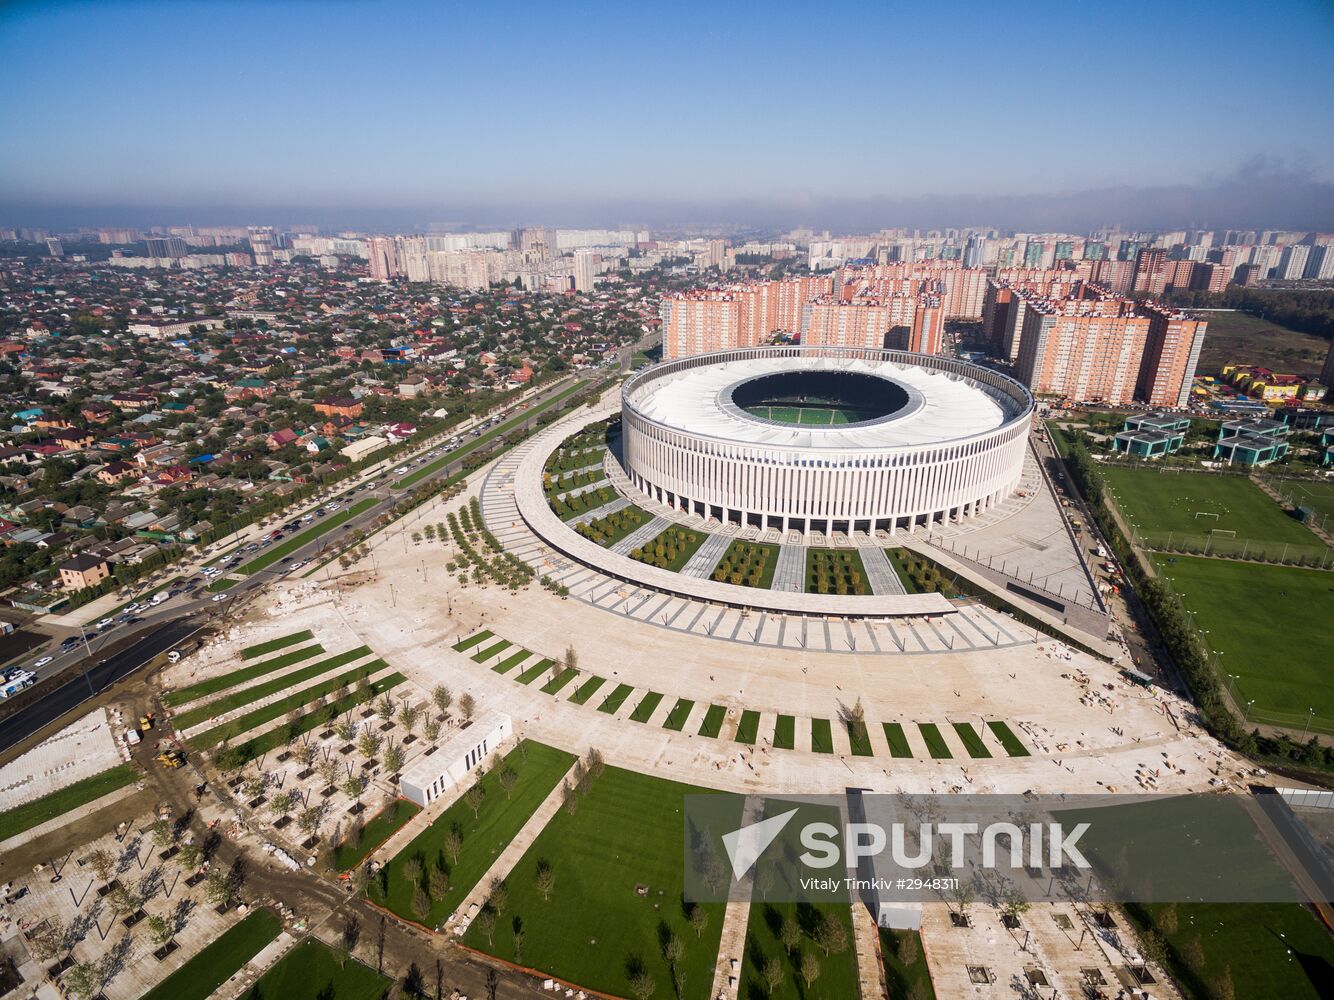 FC Krasnodar Stadium opens on October 9